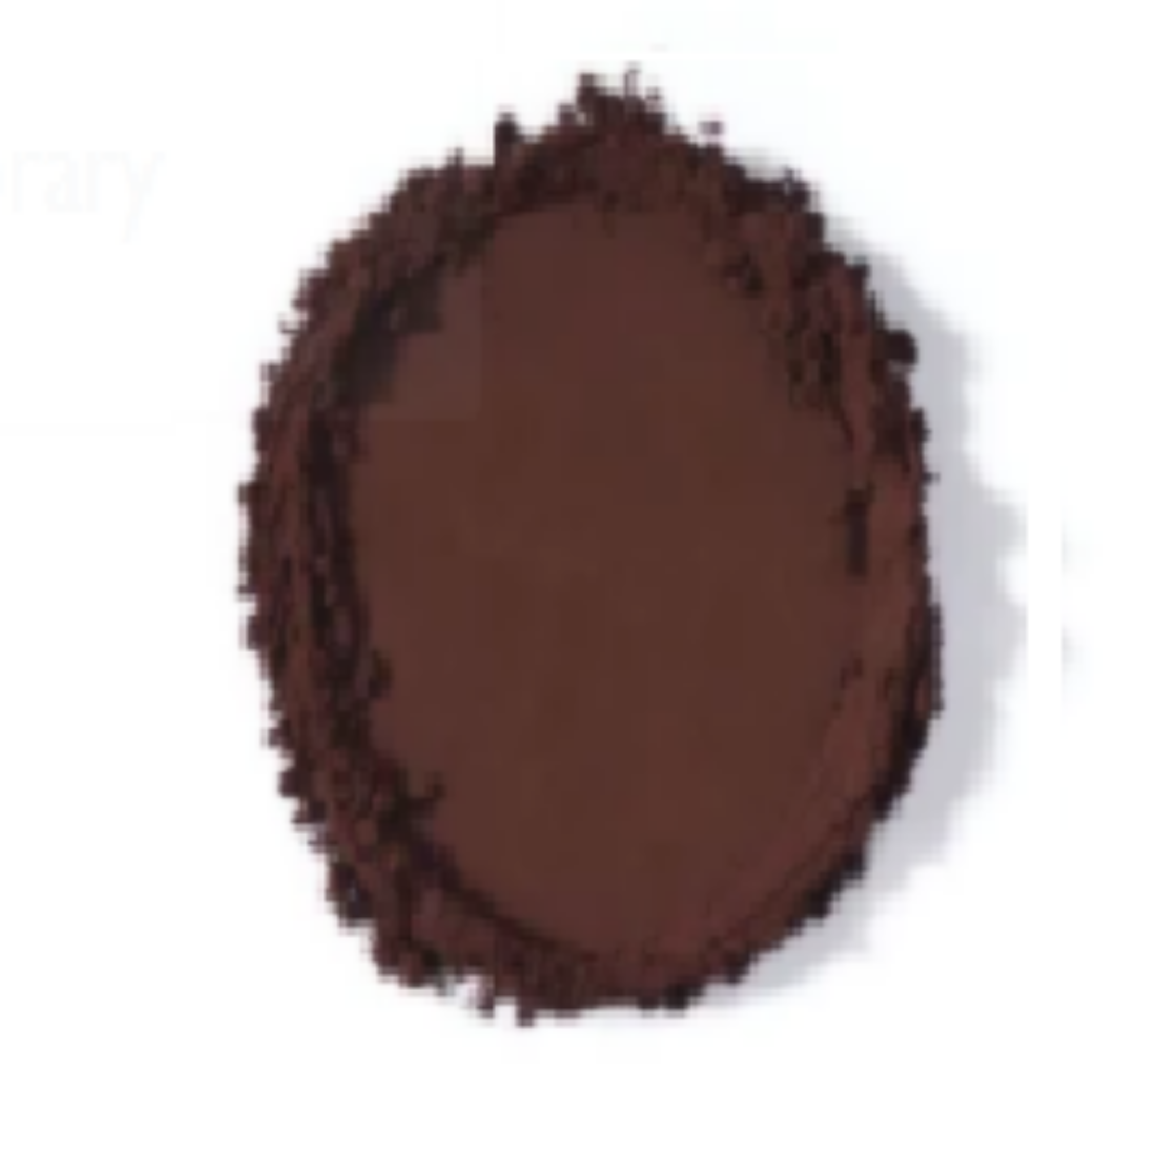 Picture of 5KG BLACK COCOA POWDER (10-12% FAT)